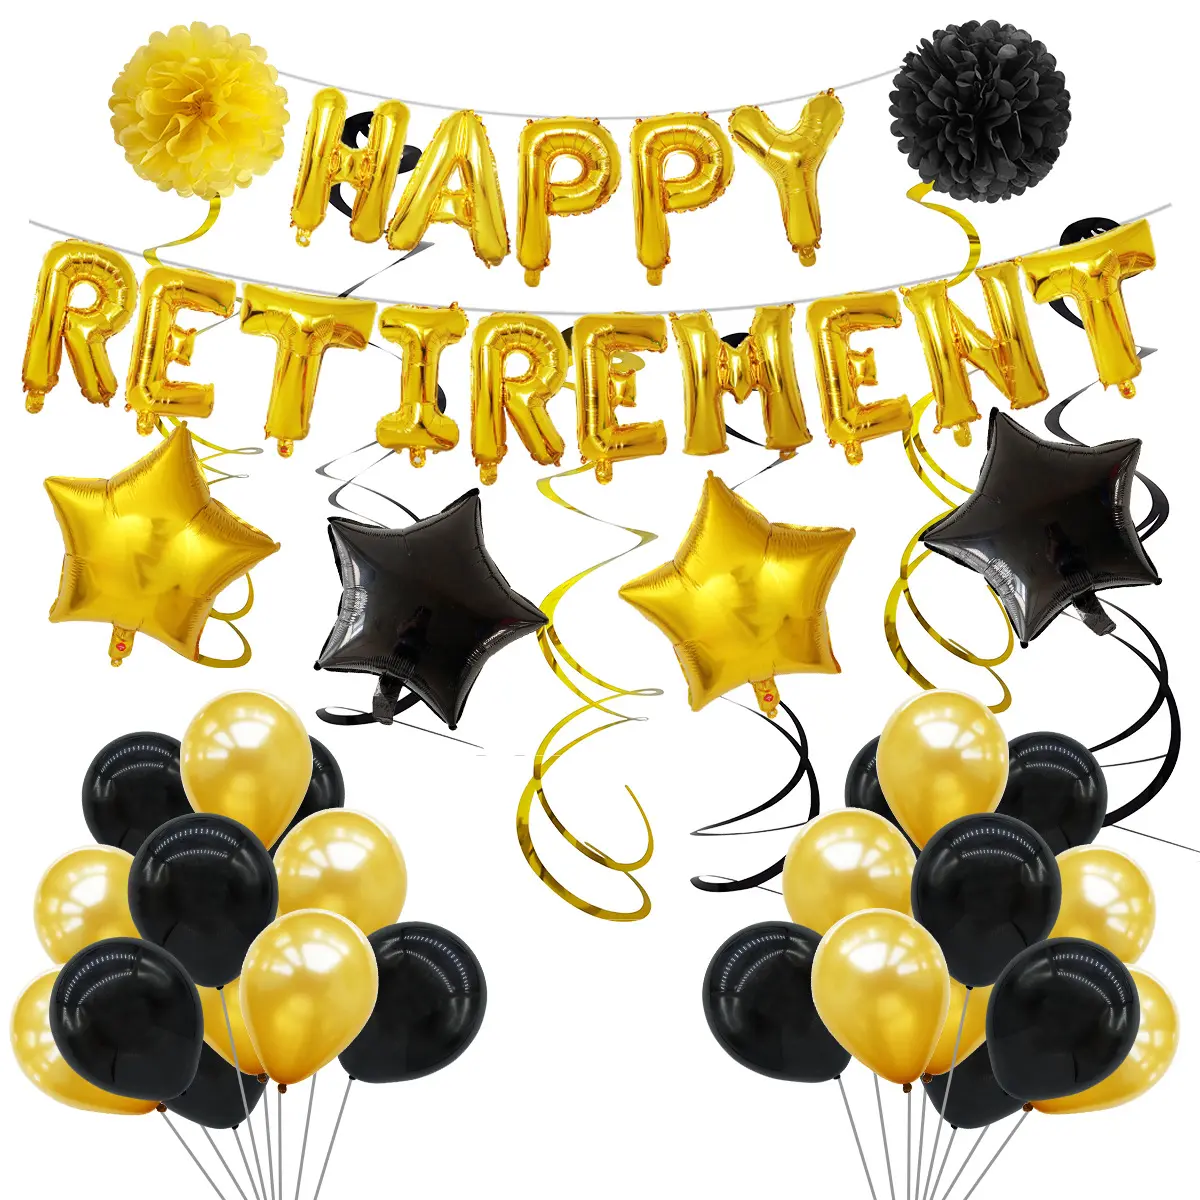 مجموعة بالونات الاحتفال بالرحلة التقاعدية بحروف HAPPY RETIREMENT بحجم 16 بوصة مع غشاء ألمنيوم بالونات للحفلات